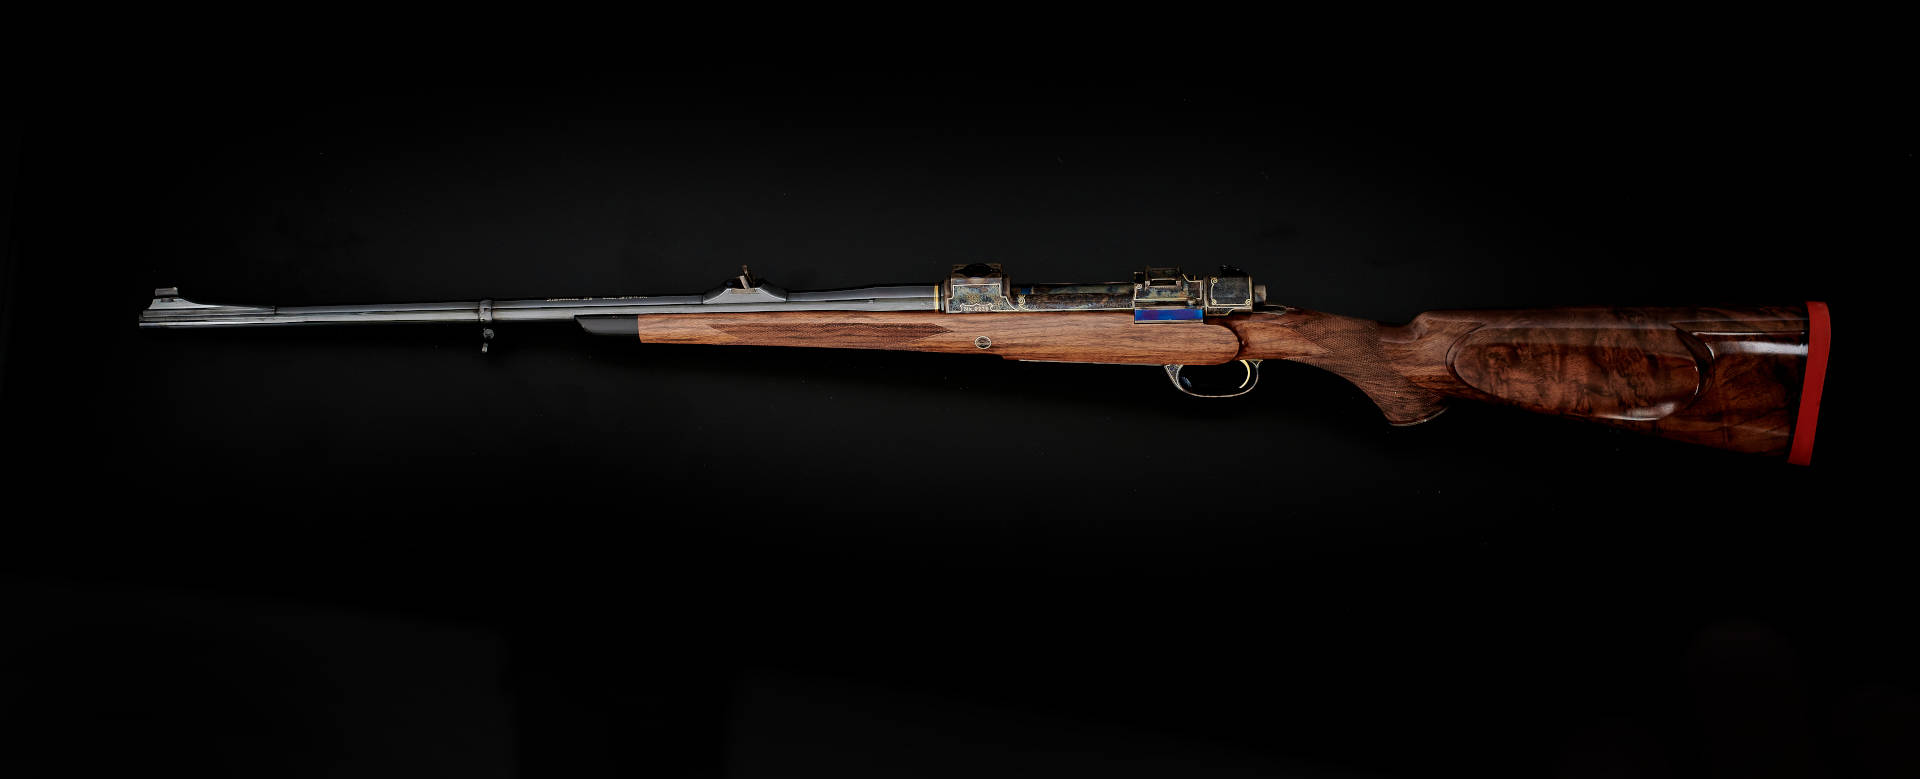 Kesslerin supreme hunting rifle from the gunsmith master workshop Waffen Kessler in Deggendorf